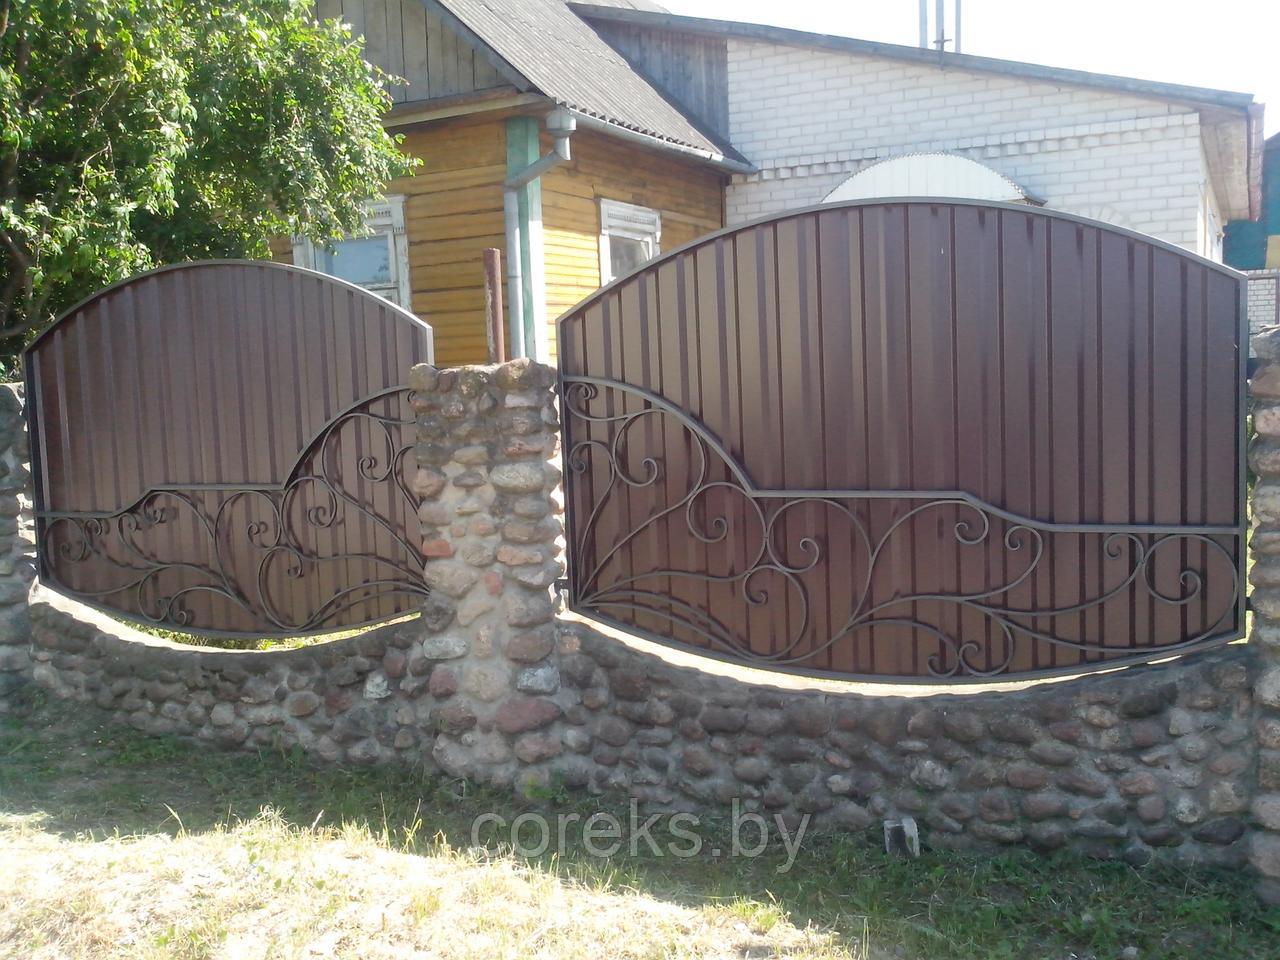 Кованый забор с металлопрофилем RAL8017 (шоколадно-коричневый) №4